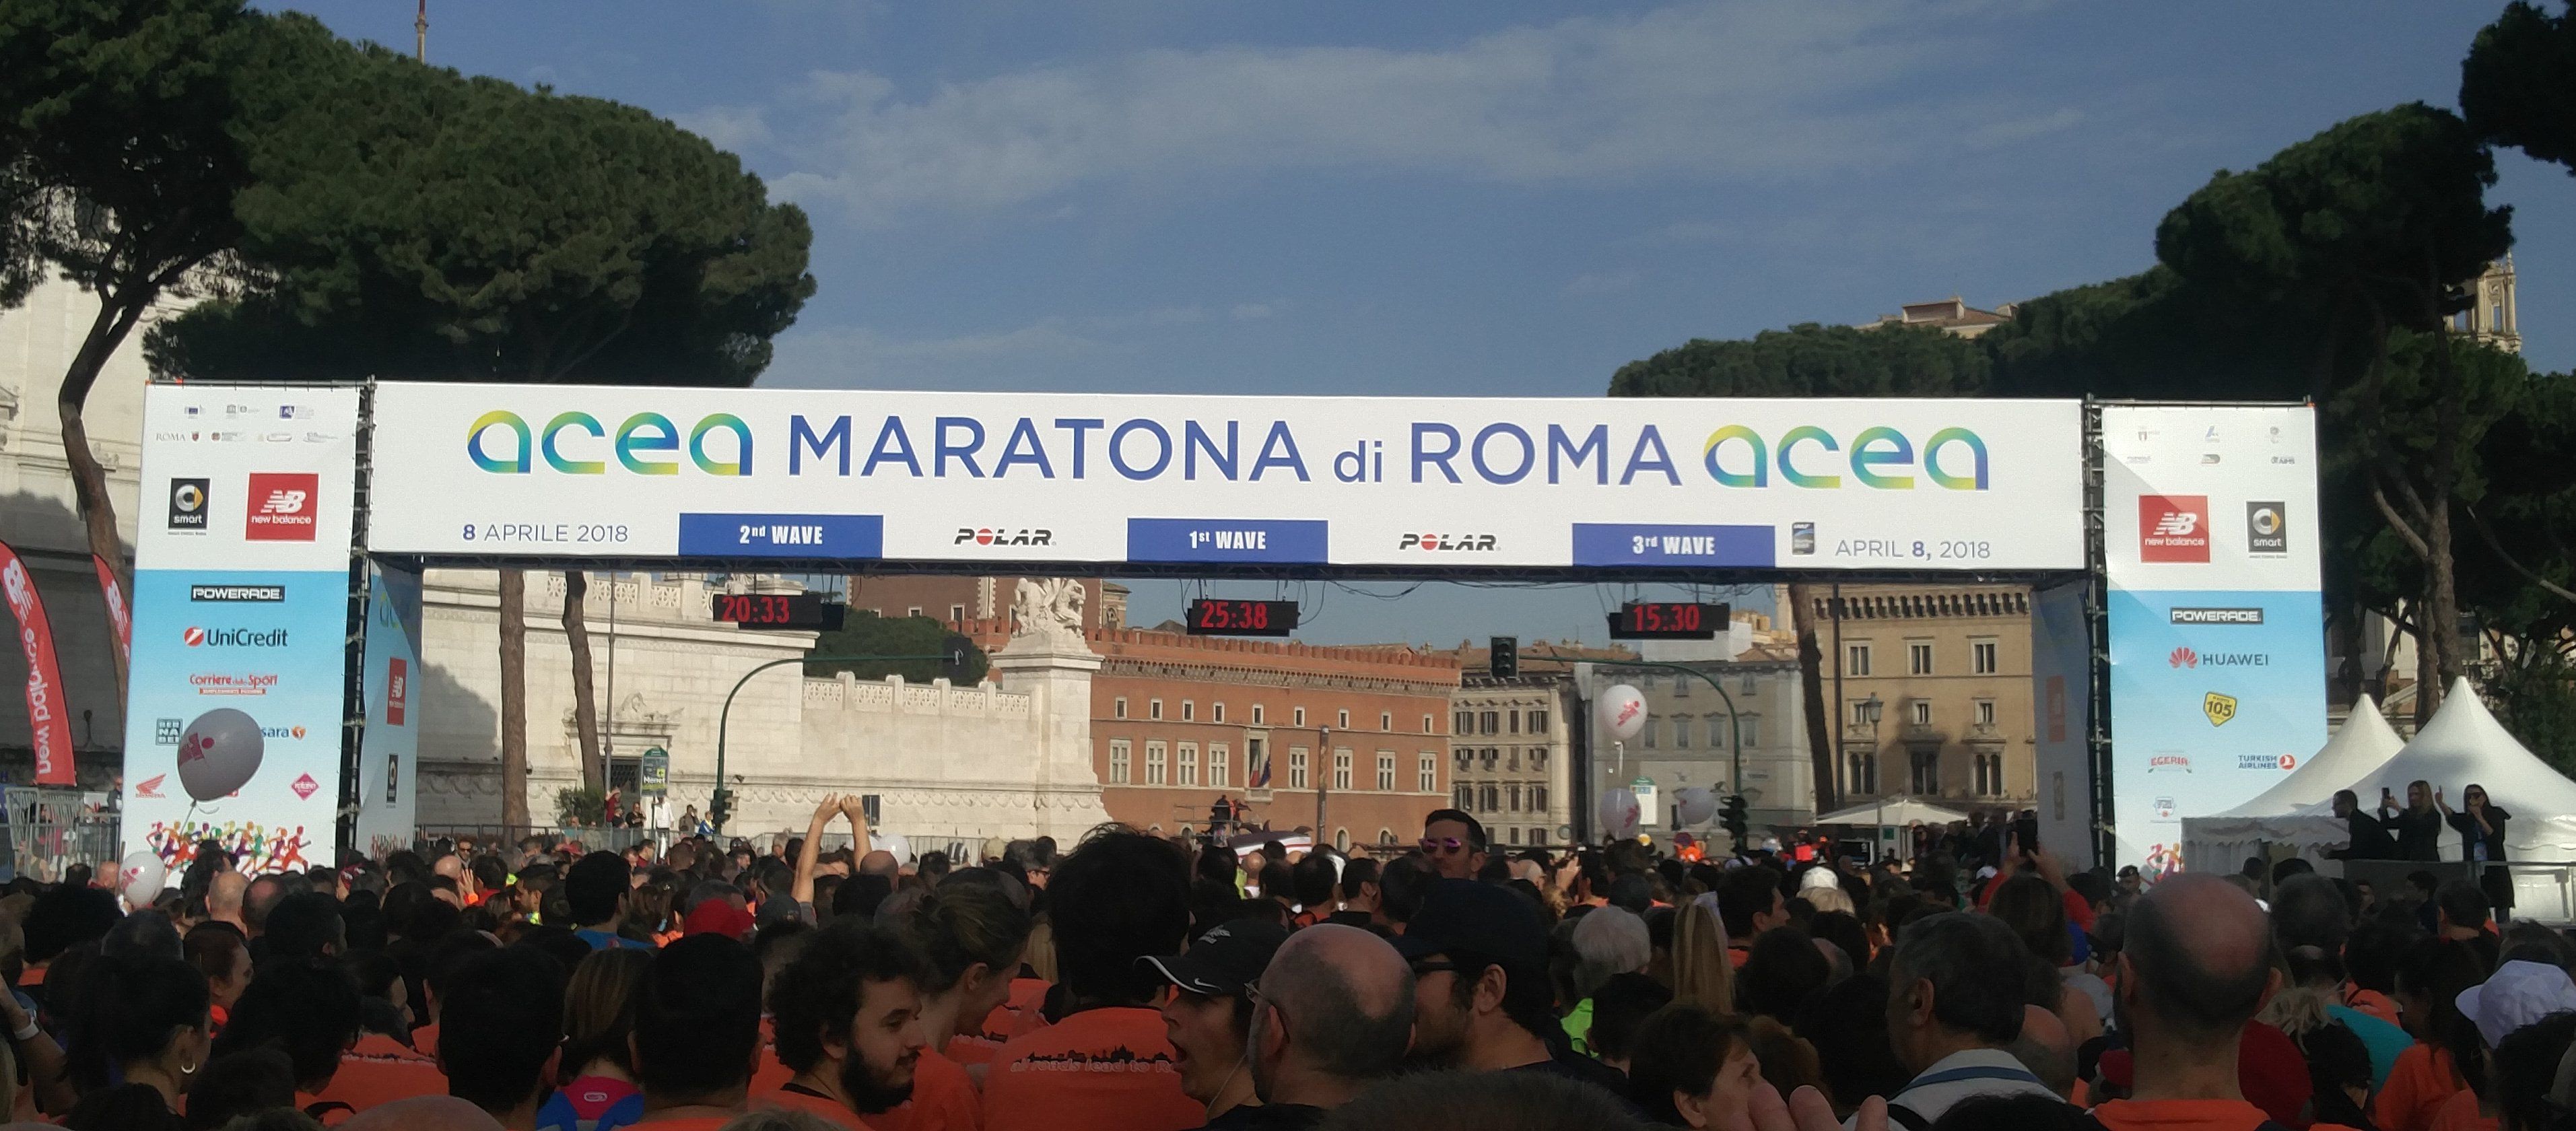 Editoriale, Maratona di Roma: una grande bellezza. E poi?